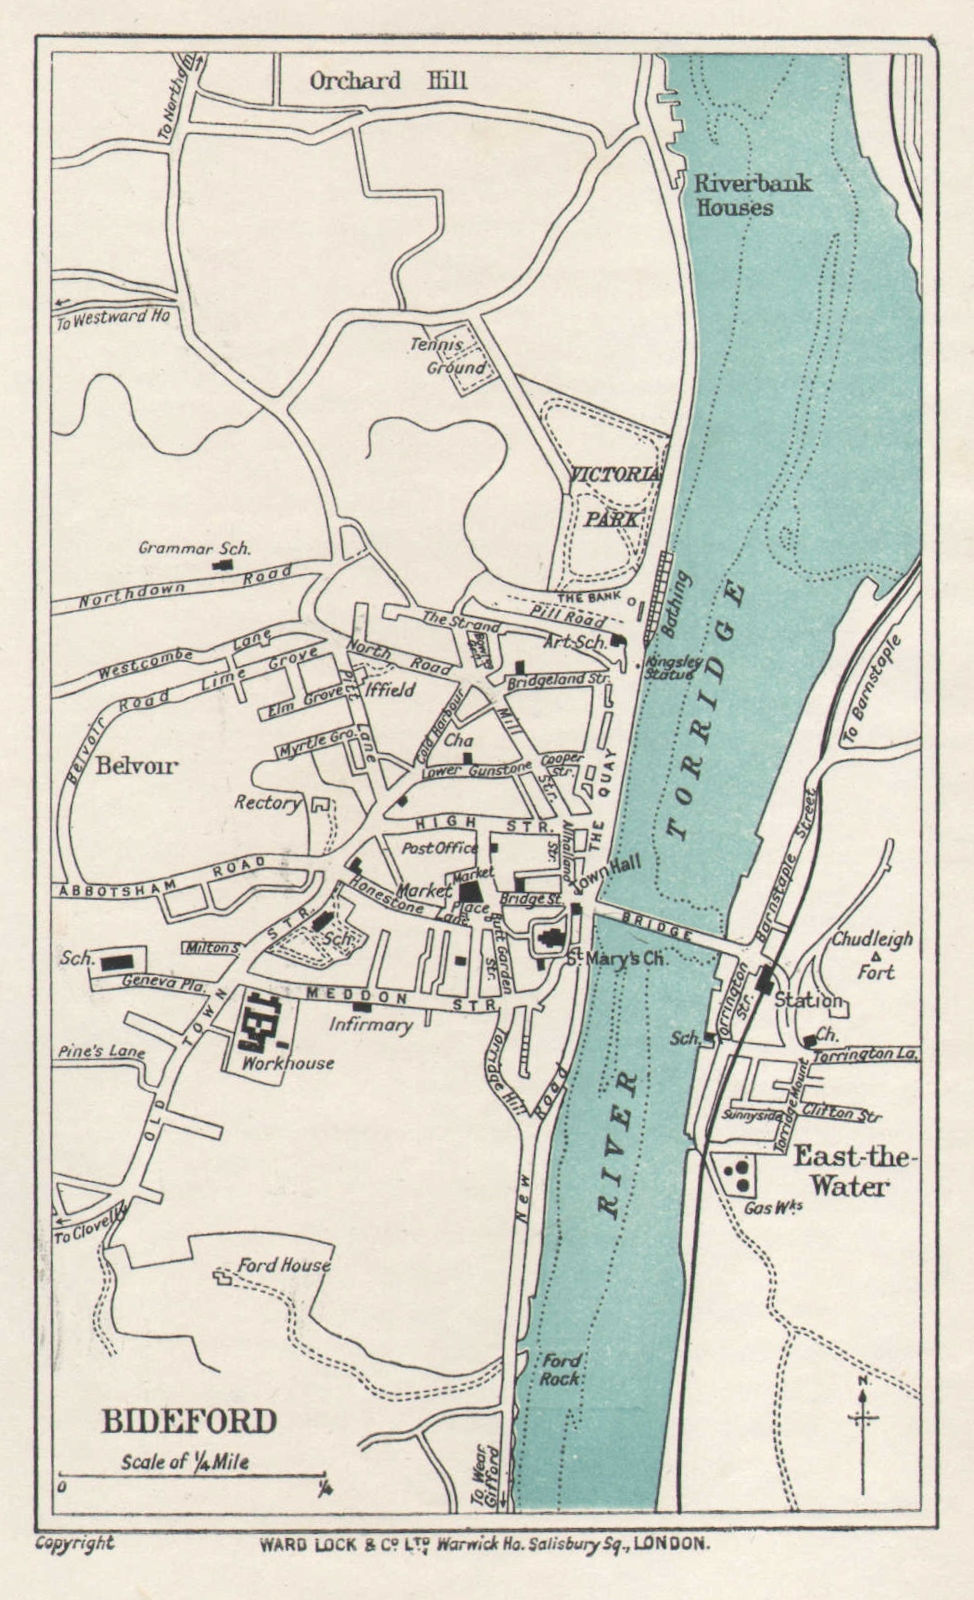 BIDEFORD vintage tourist town city resort plan. Devon. WARD LOCK 1926 old map